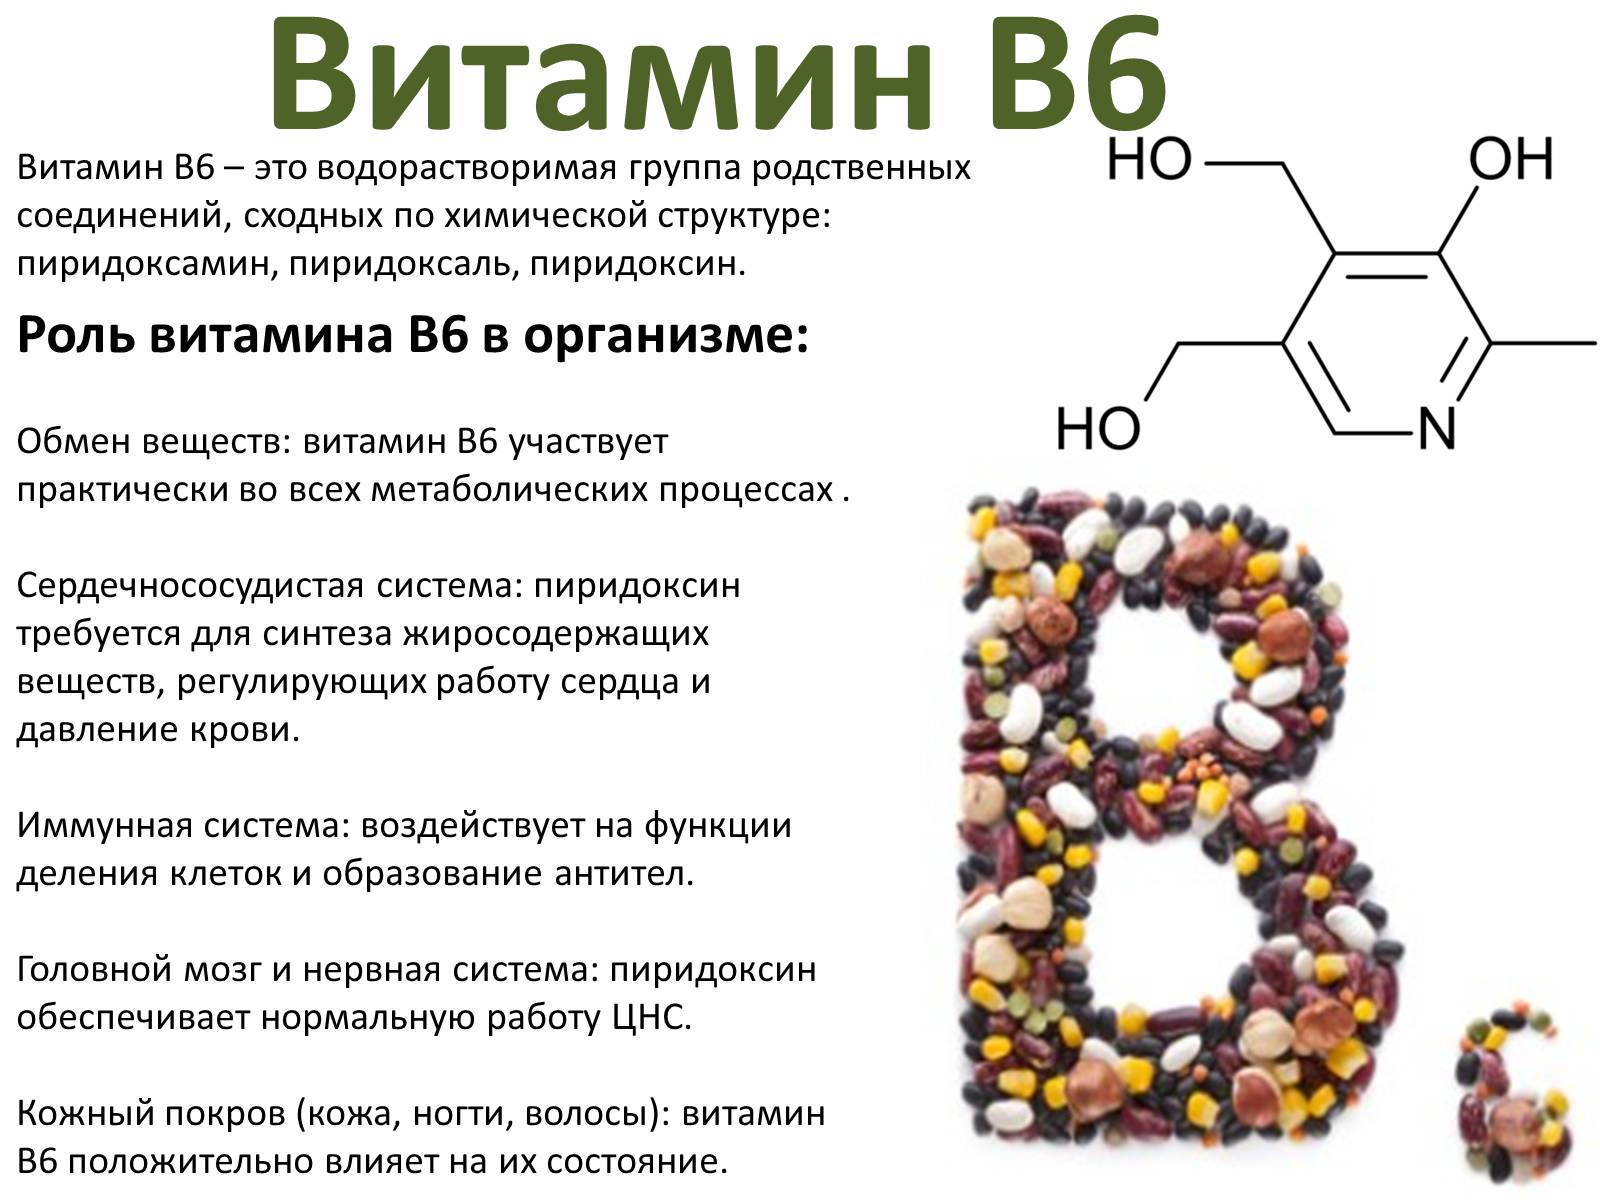 Б6 в сутки. Формула и роль витамина в6. Витамин в6 физиологическое название. Рибофлавин (витамин в12. Роль витамина b6 в организме человека.